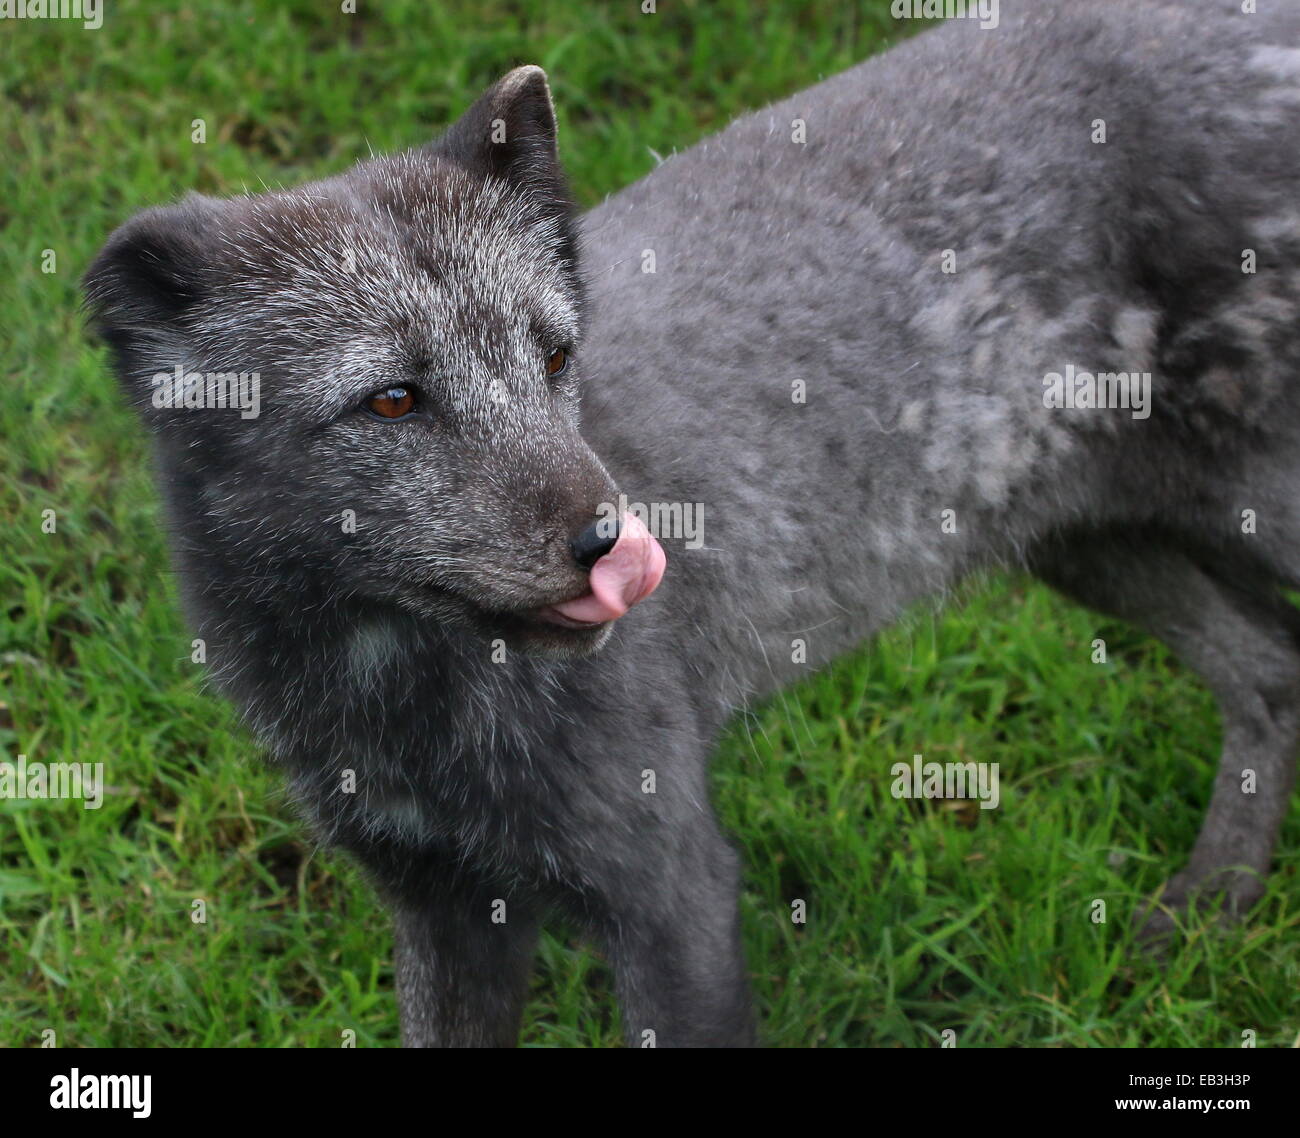 Arctic or Polar Fox (Vulpes lagopus) in greyish summer coat, licking lips Stock Photo